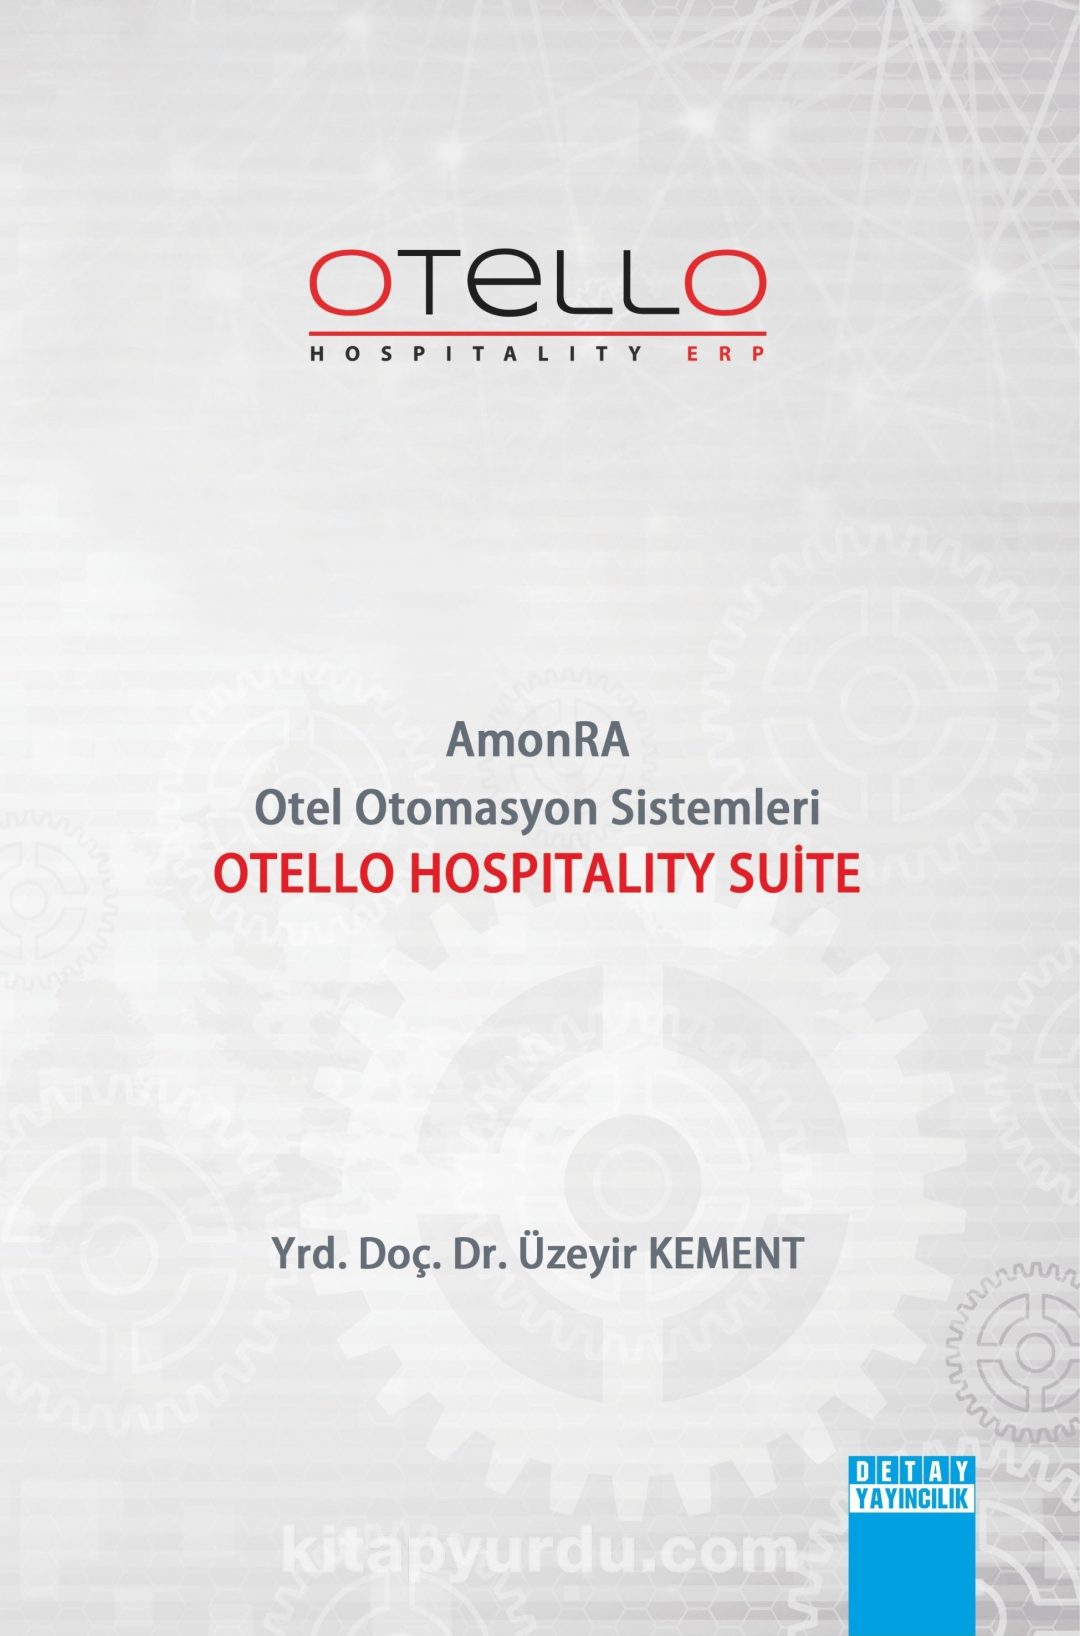 Amonra Otel Otomasyon Sistemleri & Otello Hospitality Suite